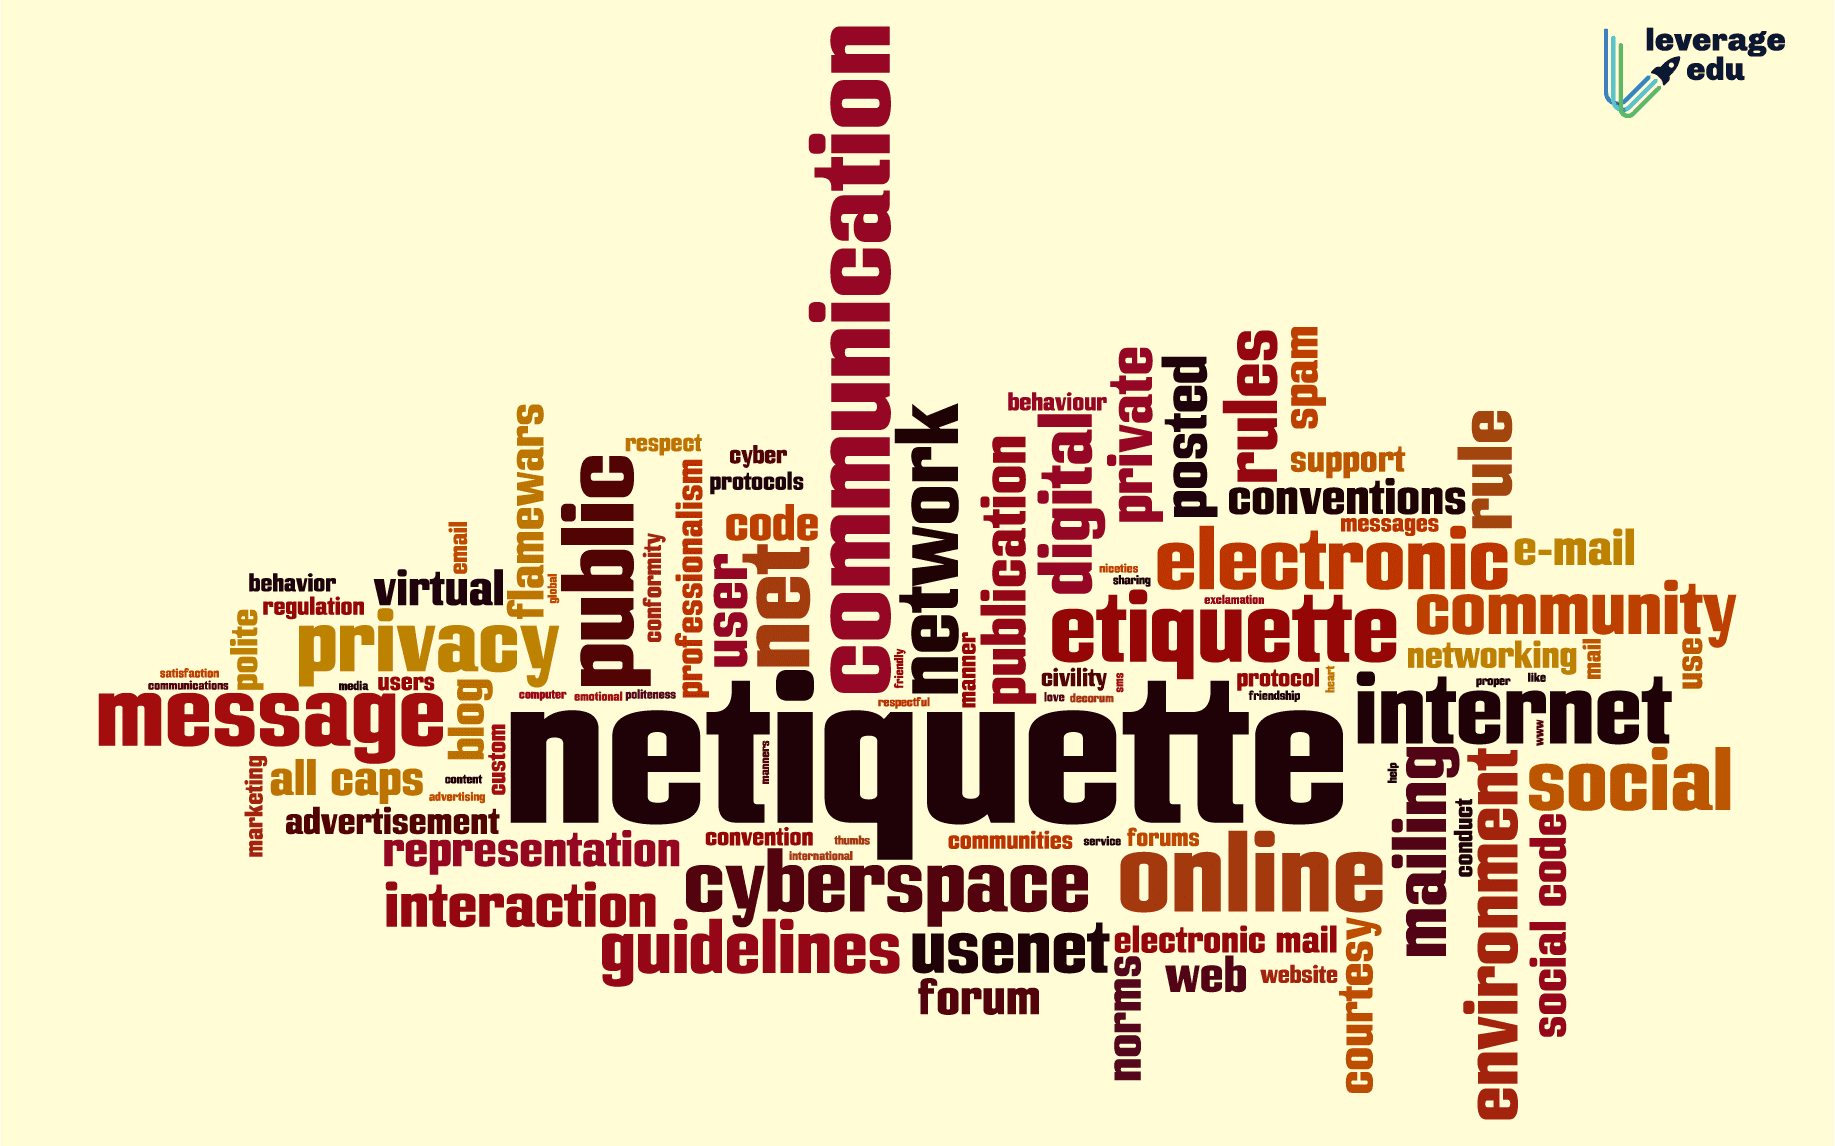 Examples of internet etiquette